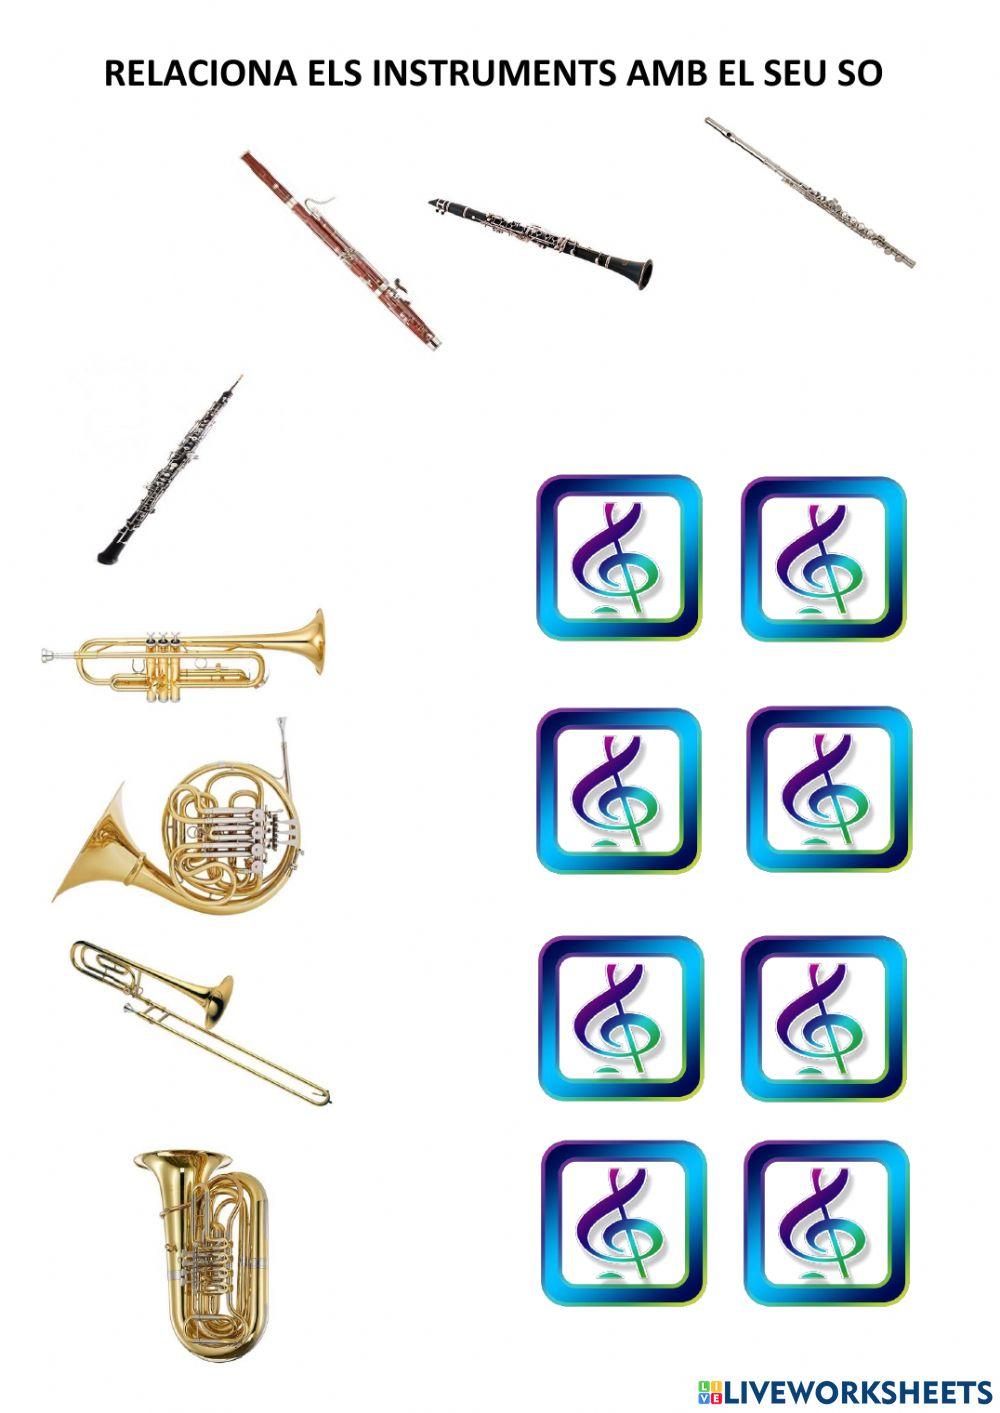 instruments de vent-so